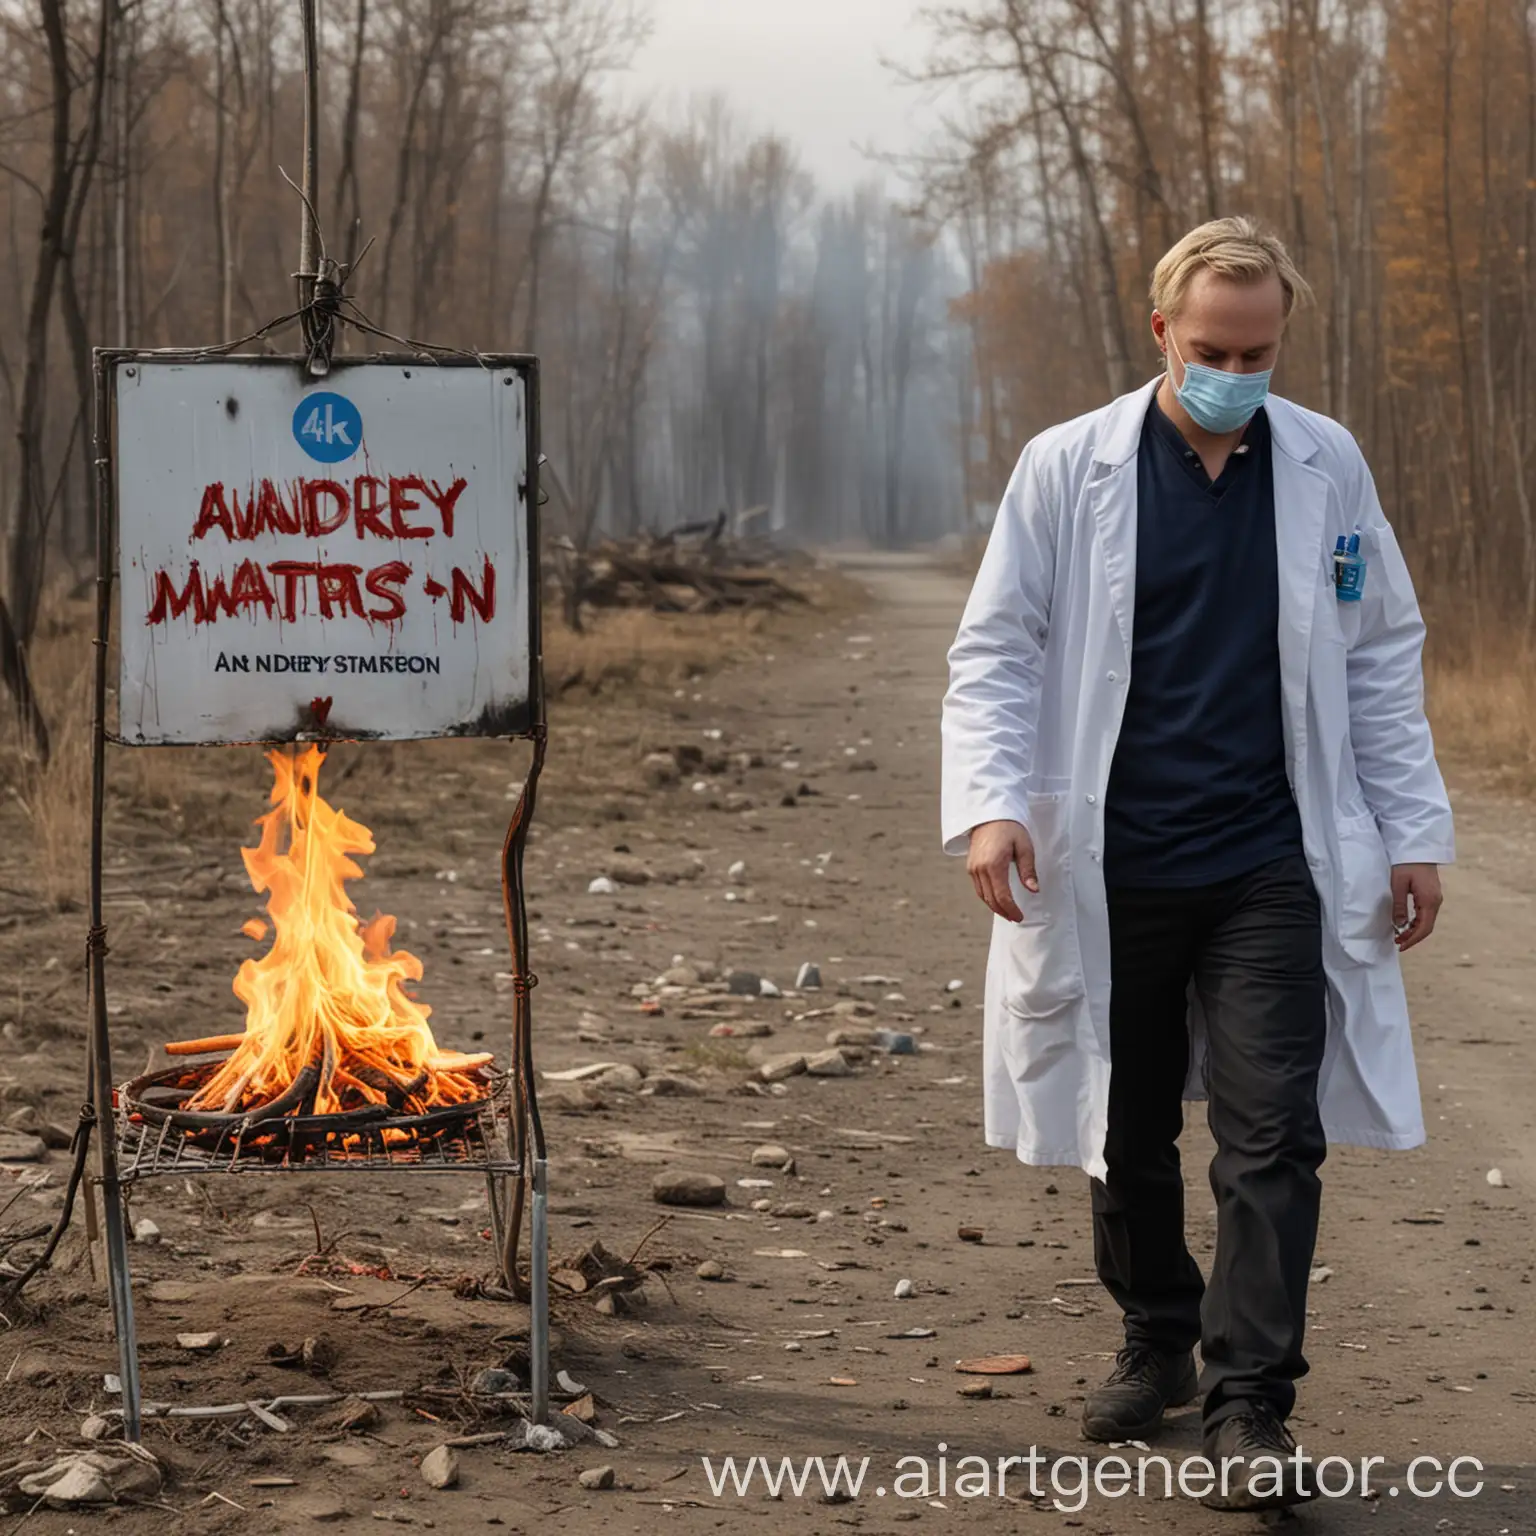 Врачи делают капельницу где рядом пробегает человек с горящей головой  с табличкой где написано  Andrey Mattsson , 4k